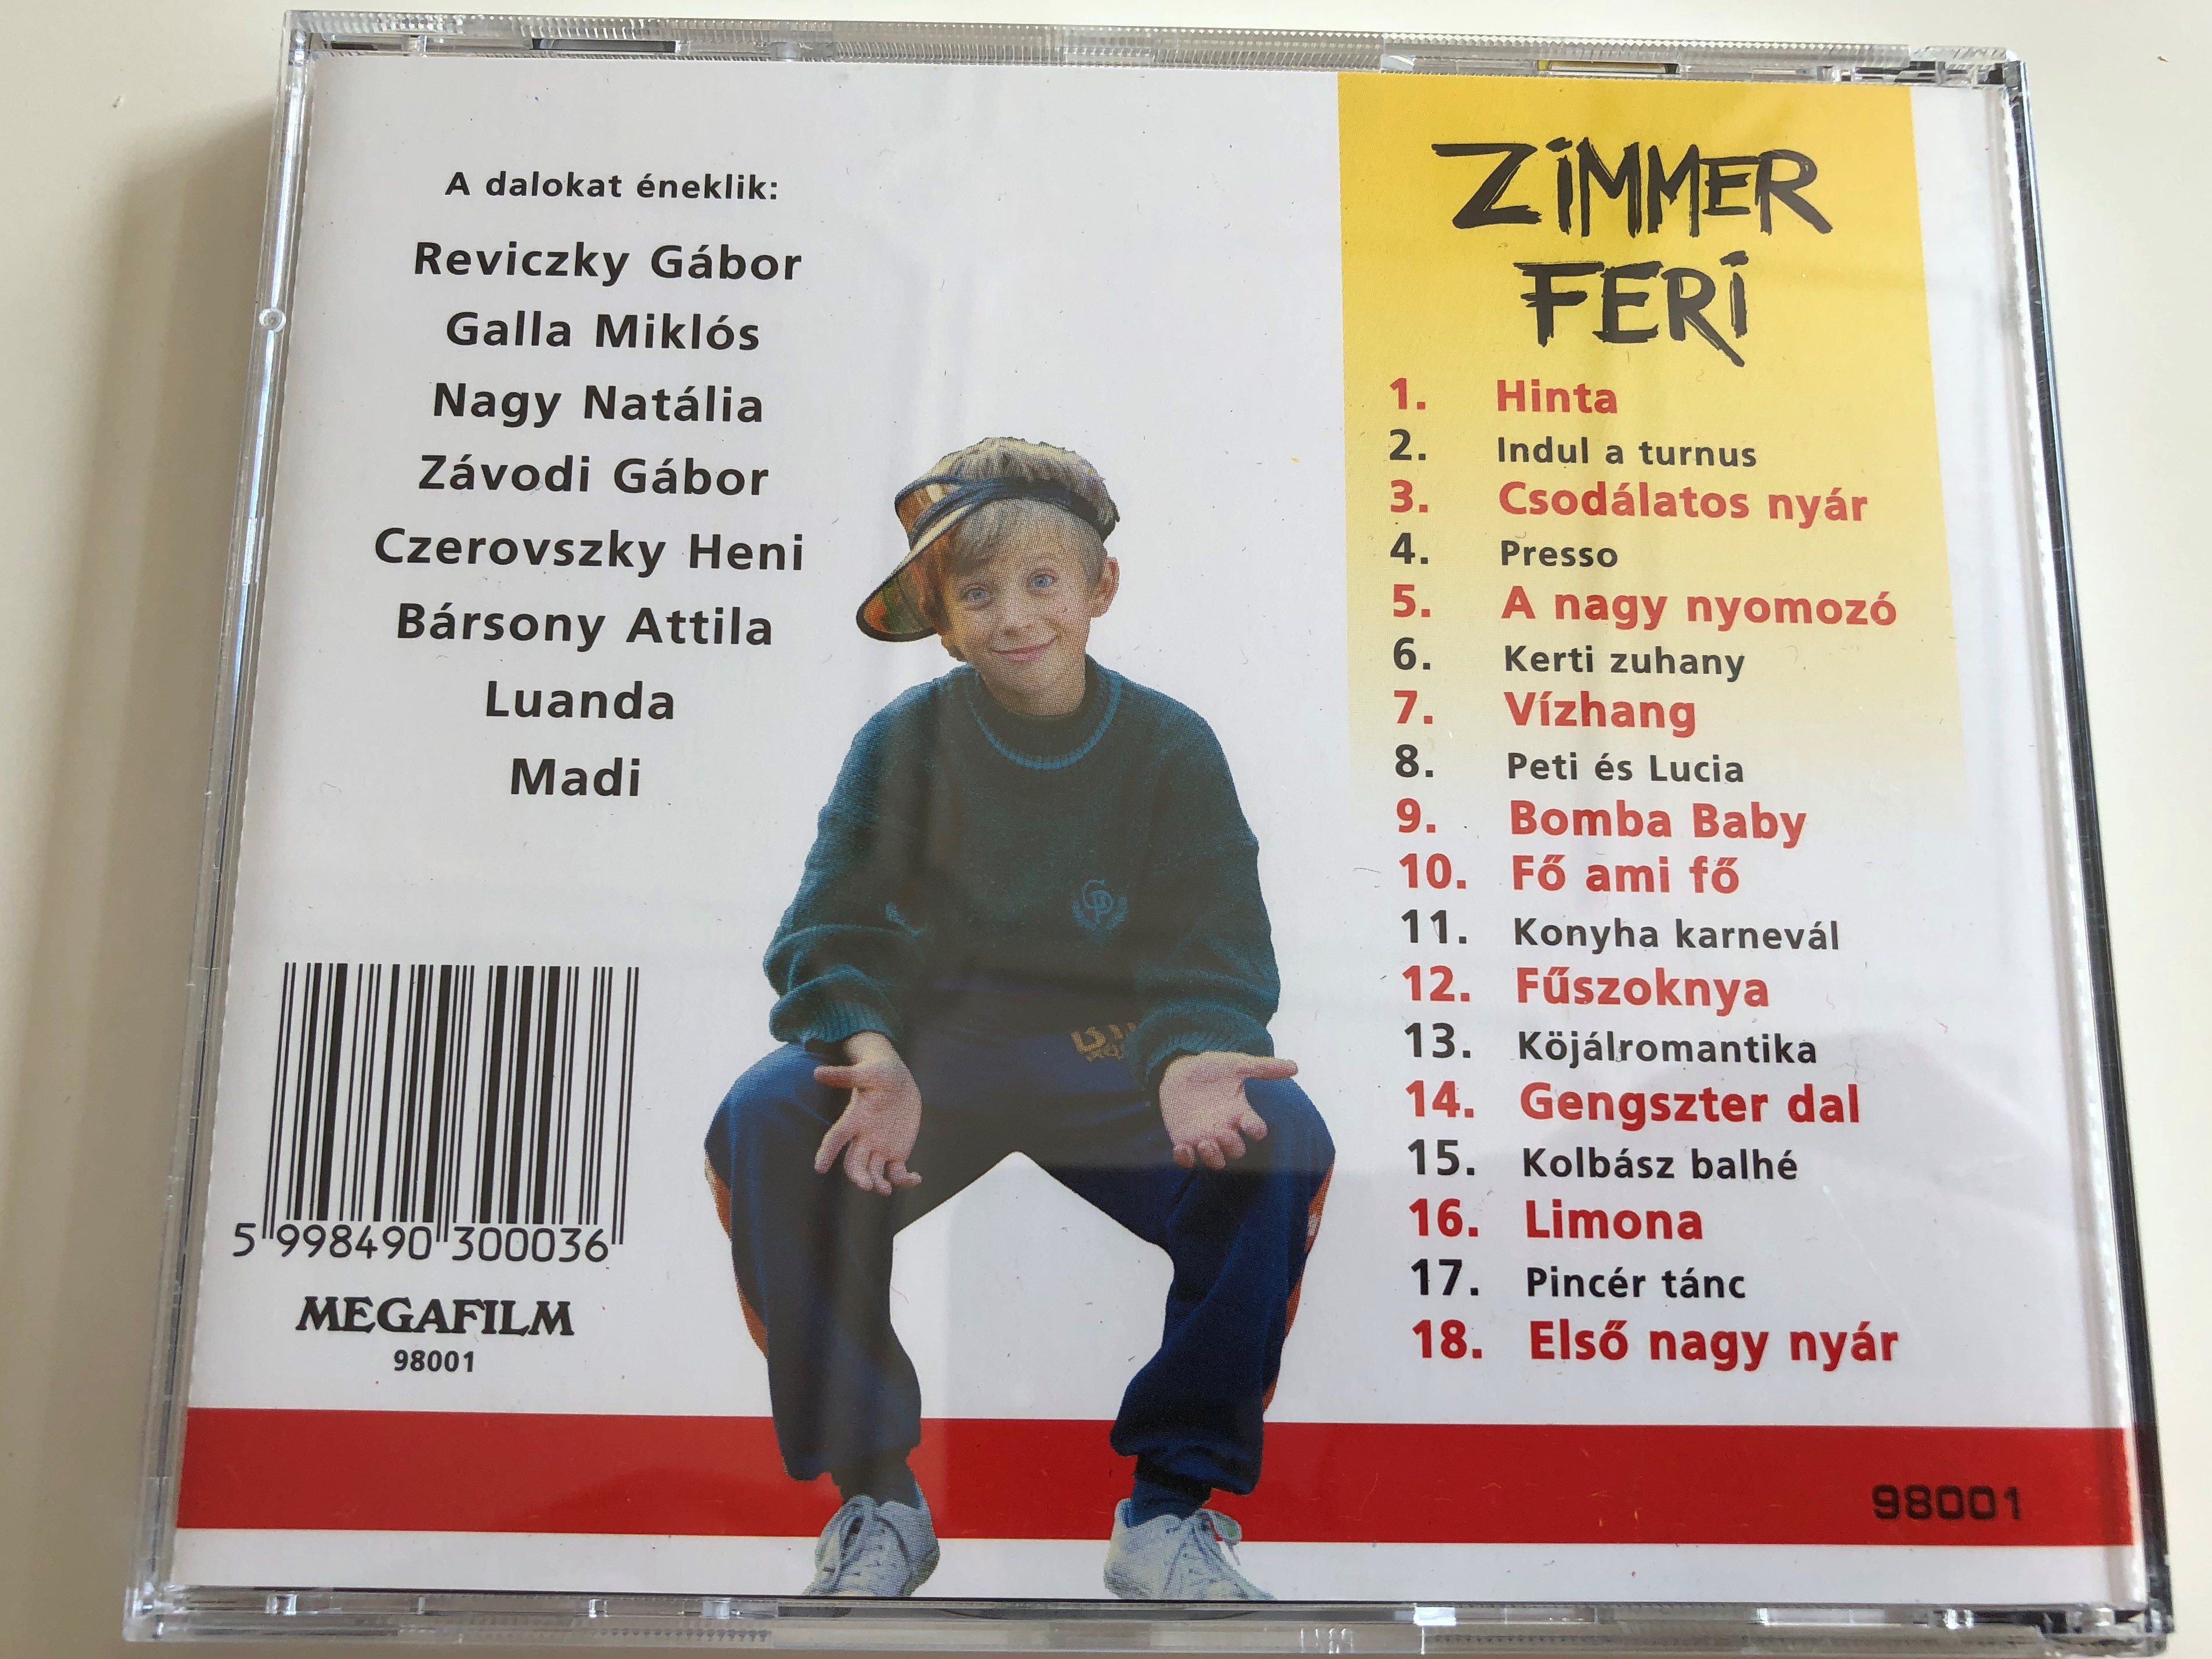 zimmer-feri-tim-r-p-ter-j-filmj-nek-zen-je-reviczky-g-bor-galla-mikl-s-nagy-nat-lia-z-vodi-g-bor-czerovszky-heni-b-rsony-attila-luanda-madi-audio-cd-1998-10-.jpg